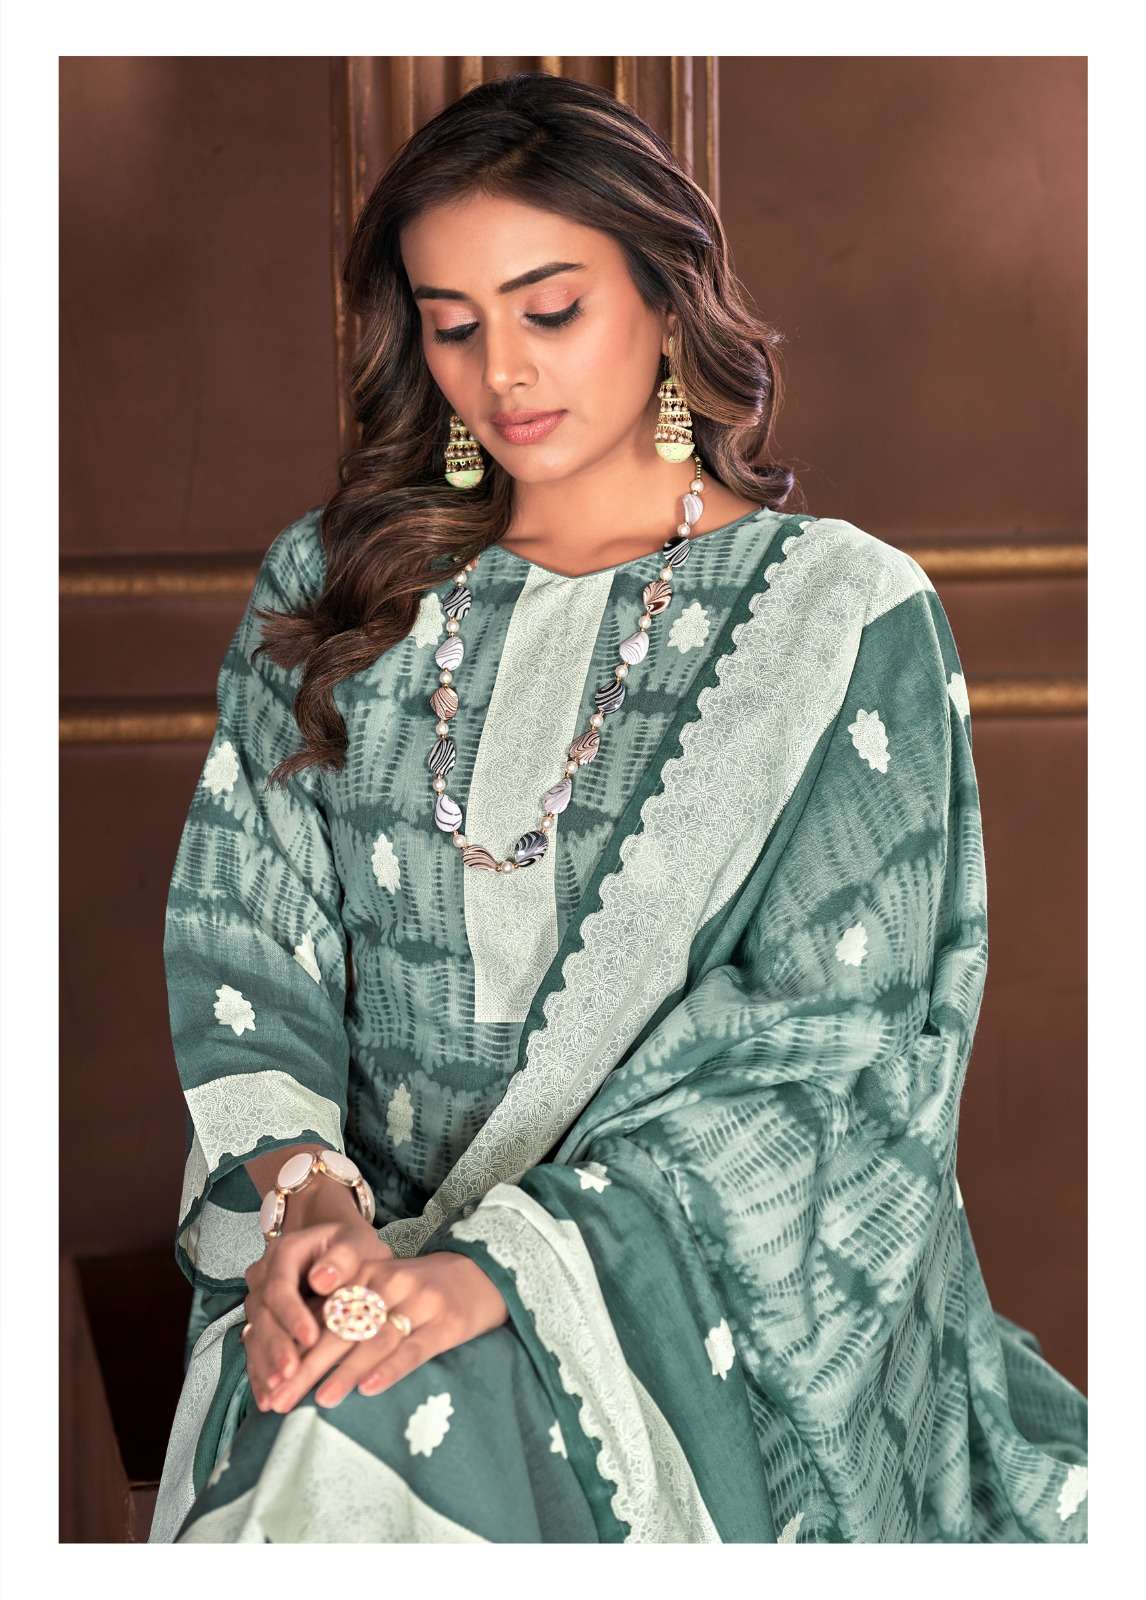 skt suits by adhira vol 5 82001-82008 series cotton digital salwar kameez collection wholesale dealer surat 